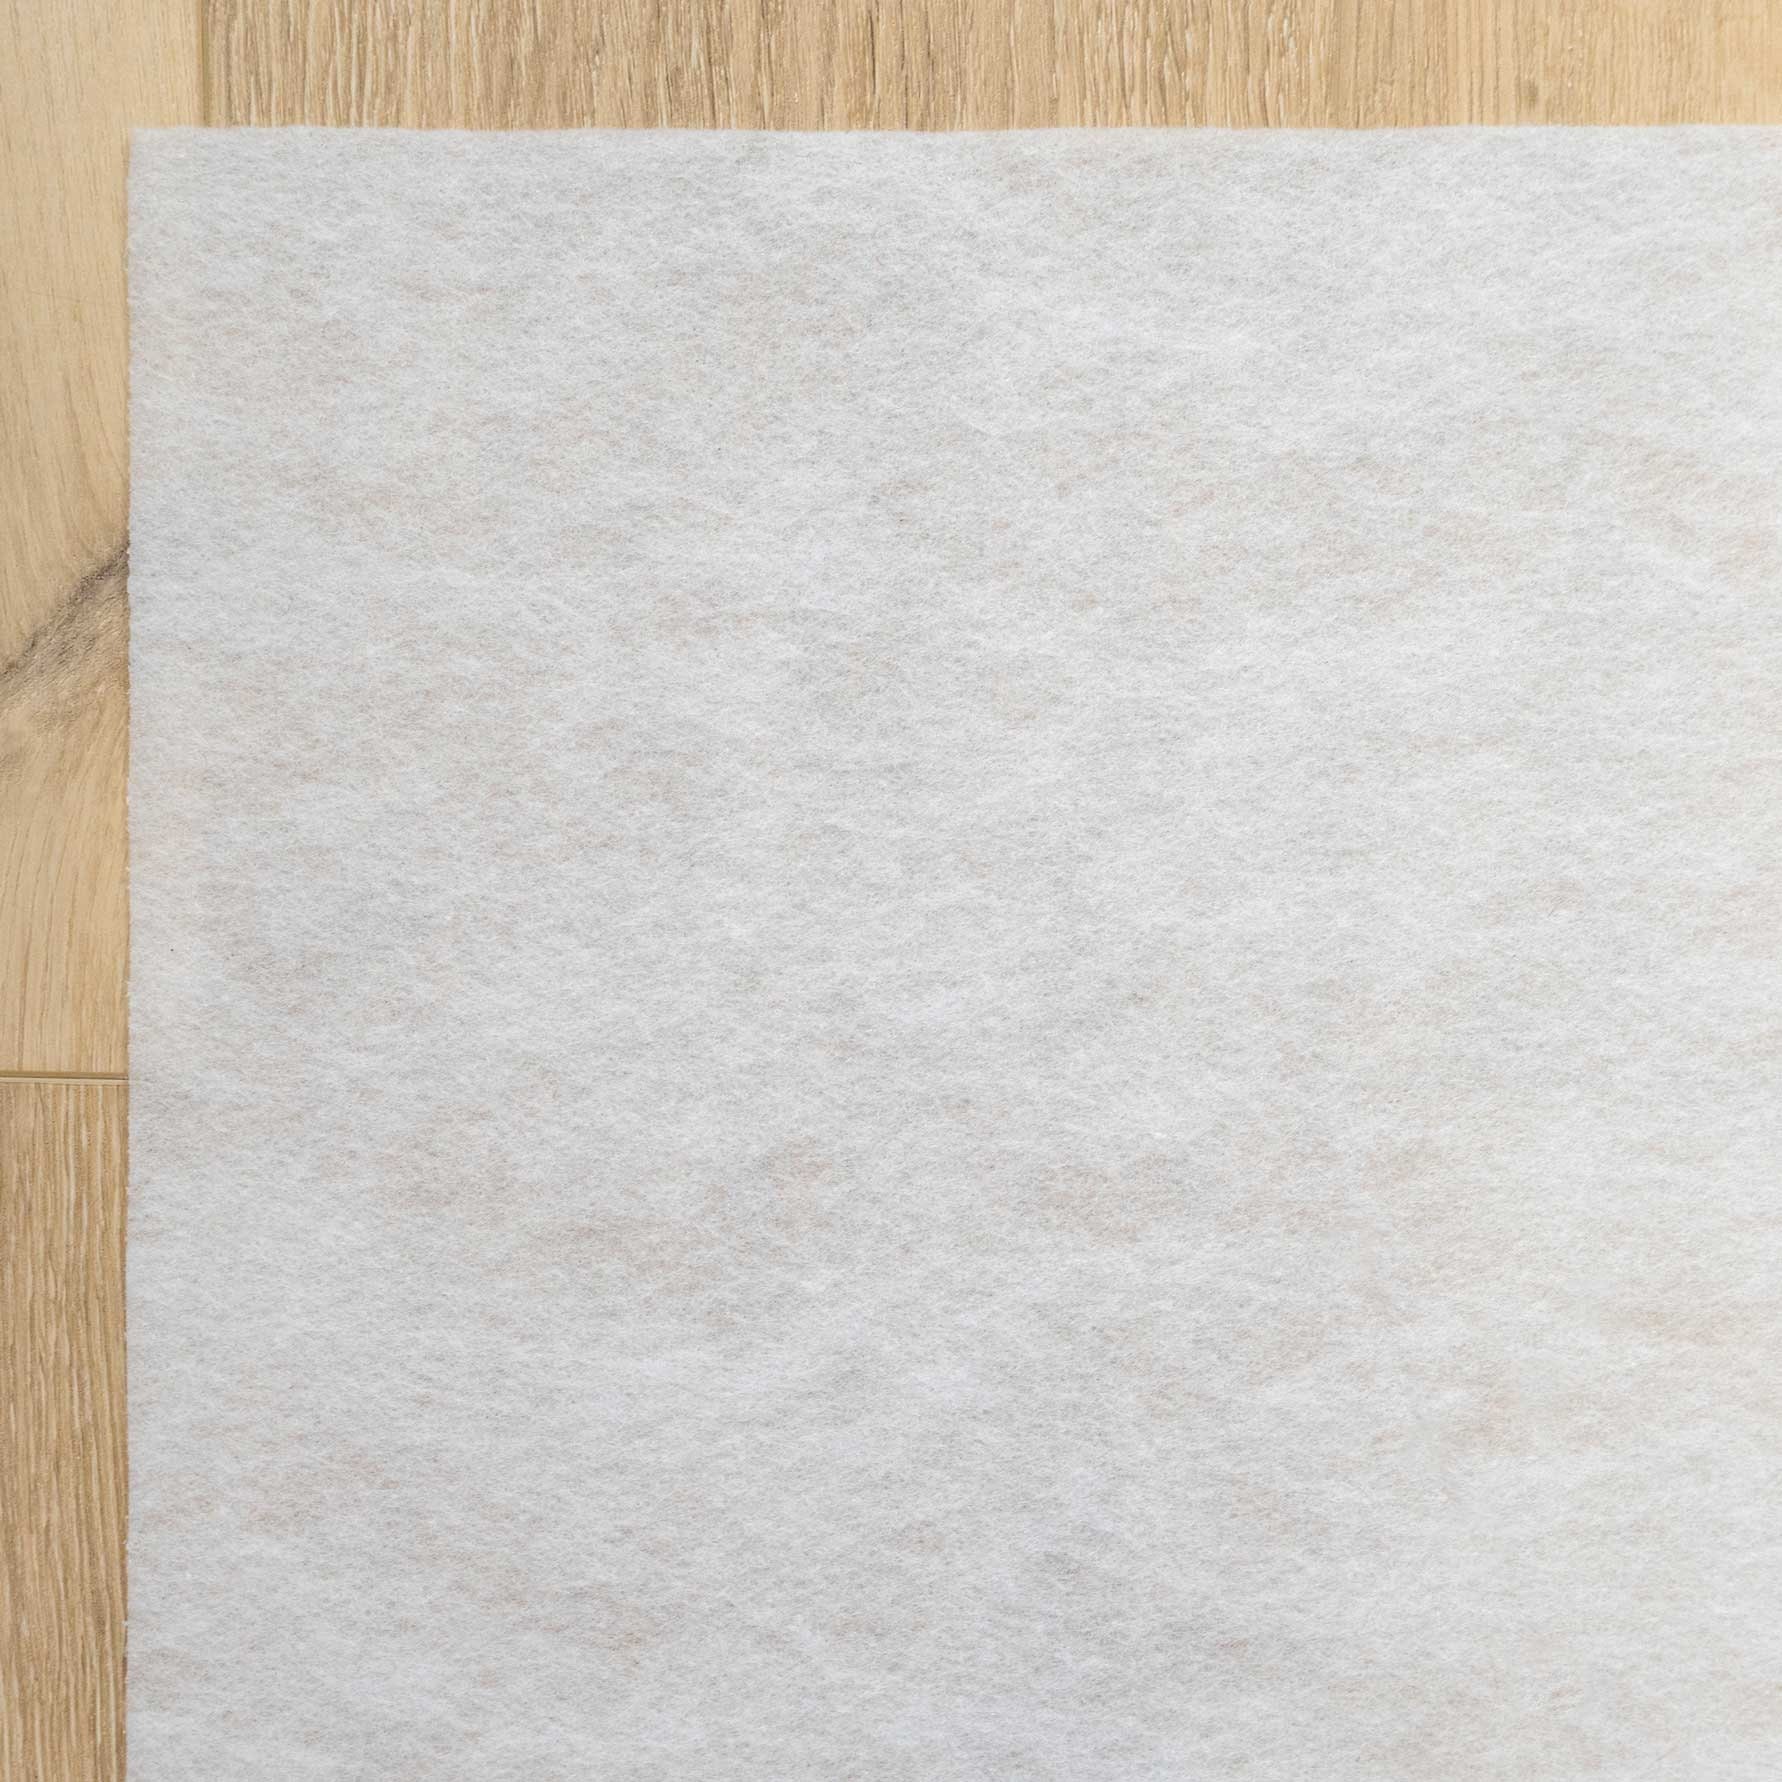 White Anti Slip Fleece Rug Underlay for All Types of Flooring